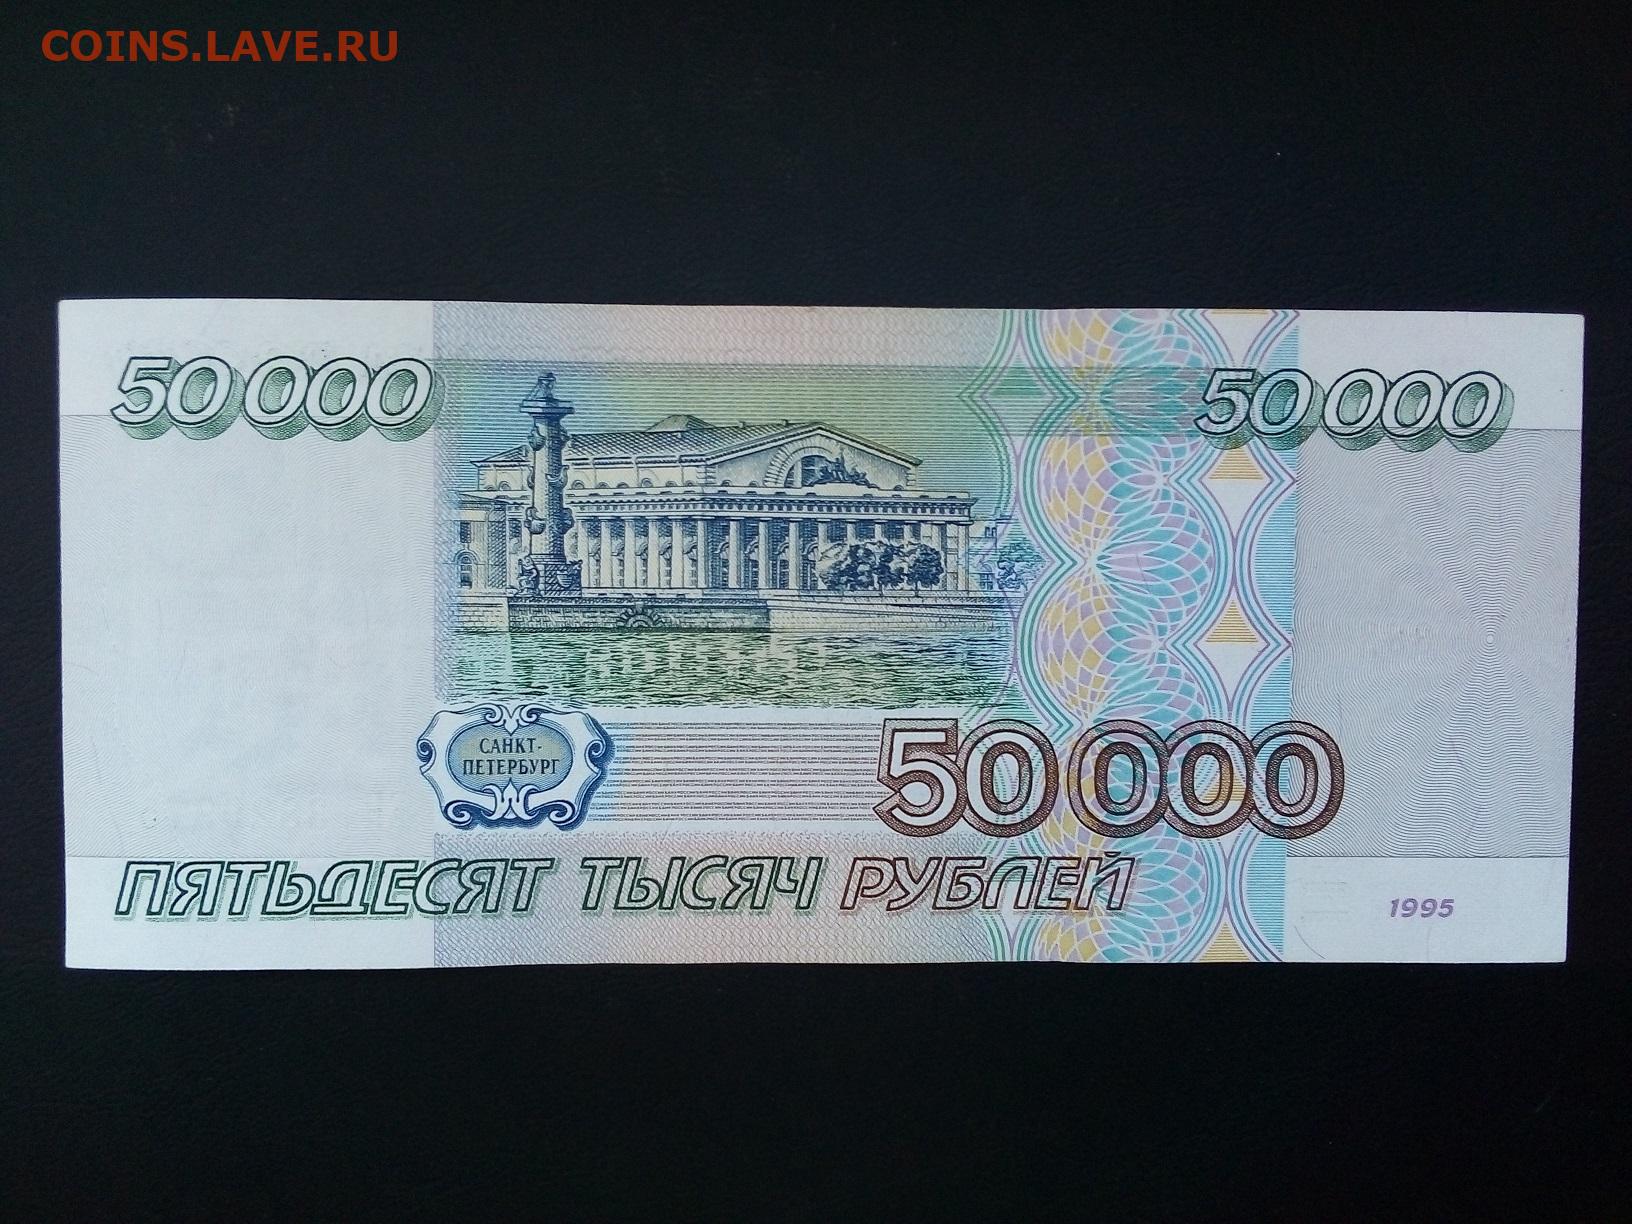 Вложить 50000 рублей. Рубли 1995 года. Банкнота 50000 рублей 1995. Банкнота 1000000 рублей 1995. Купюра 50000 рублей 1995 года.